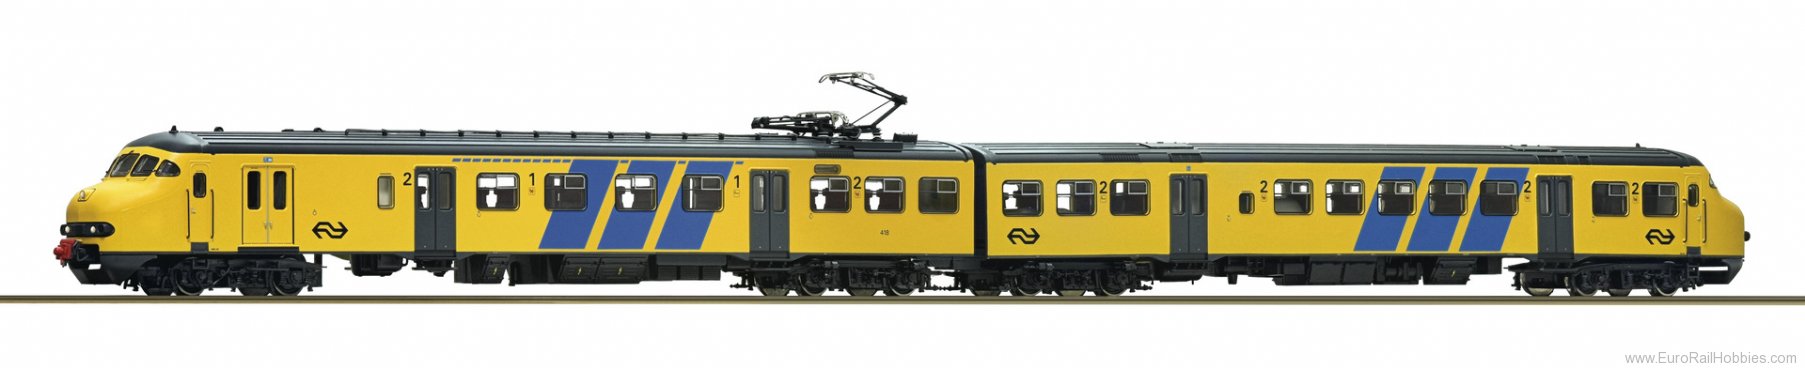 Roco 63139 NS Electric Multiple Unit Plan V Railcar DCC 